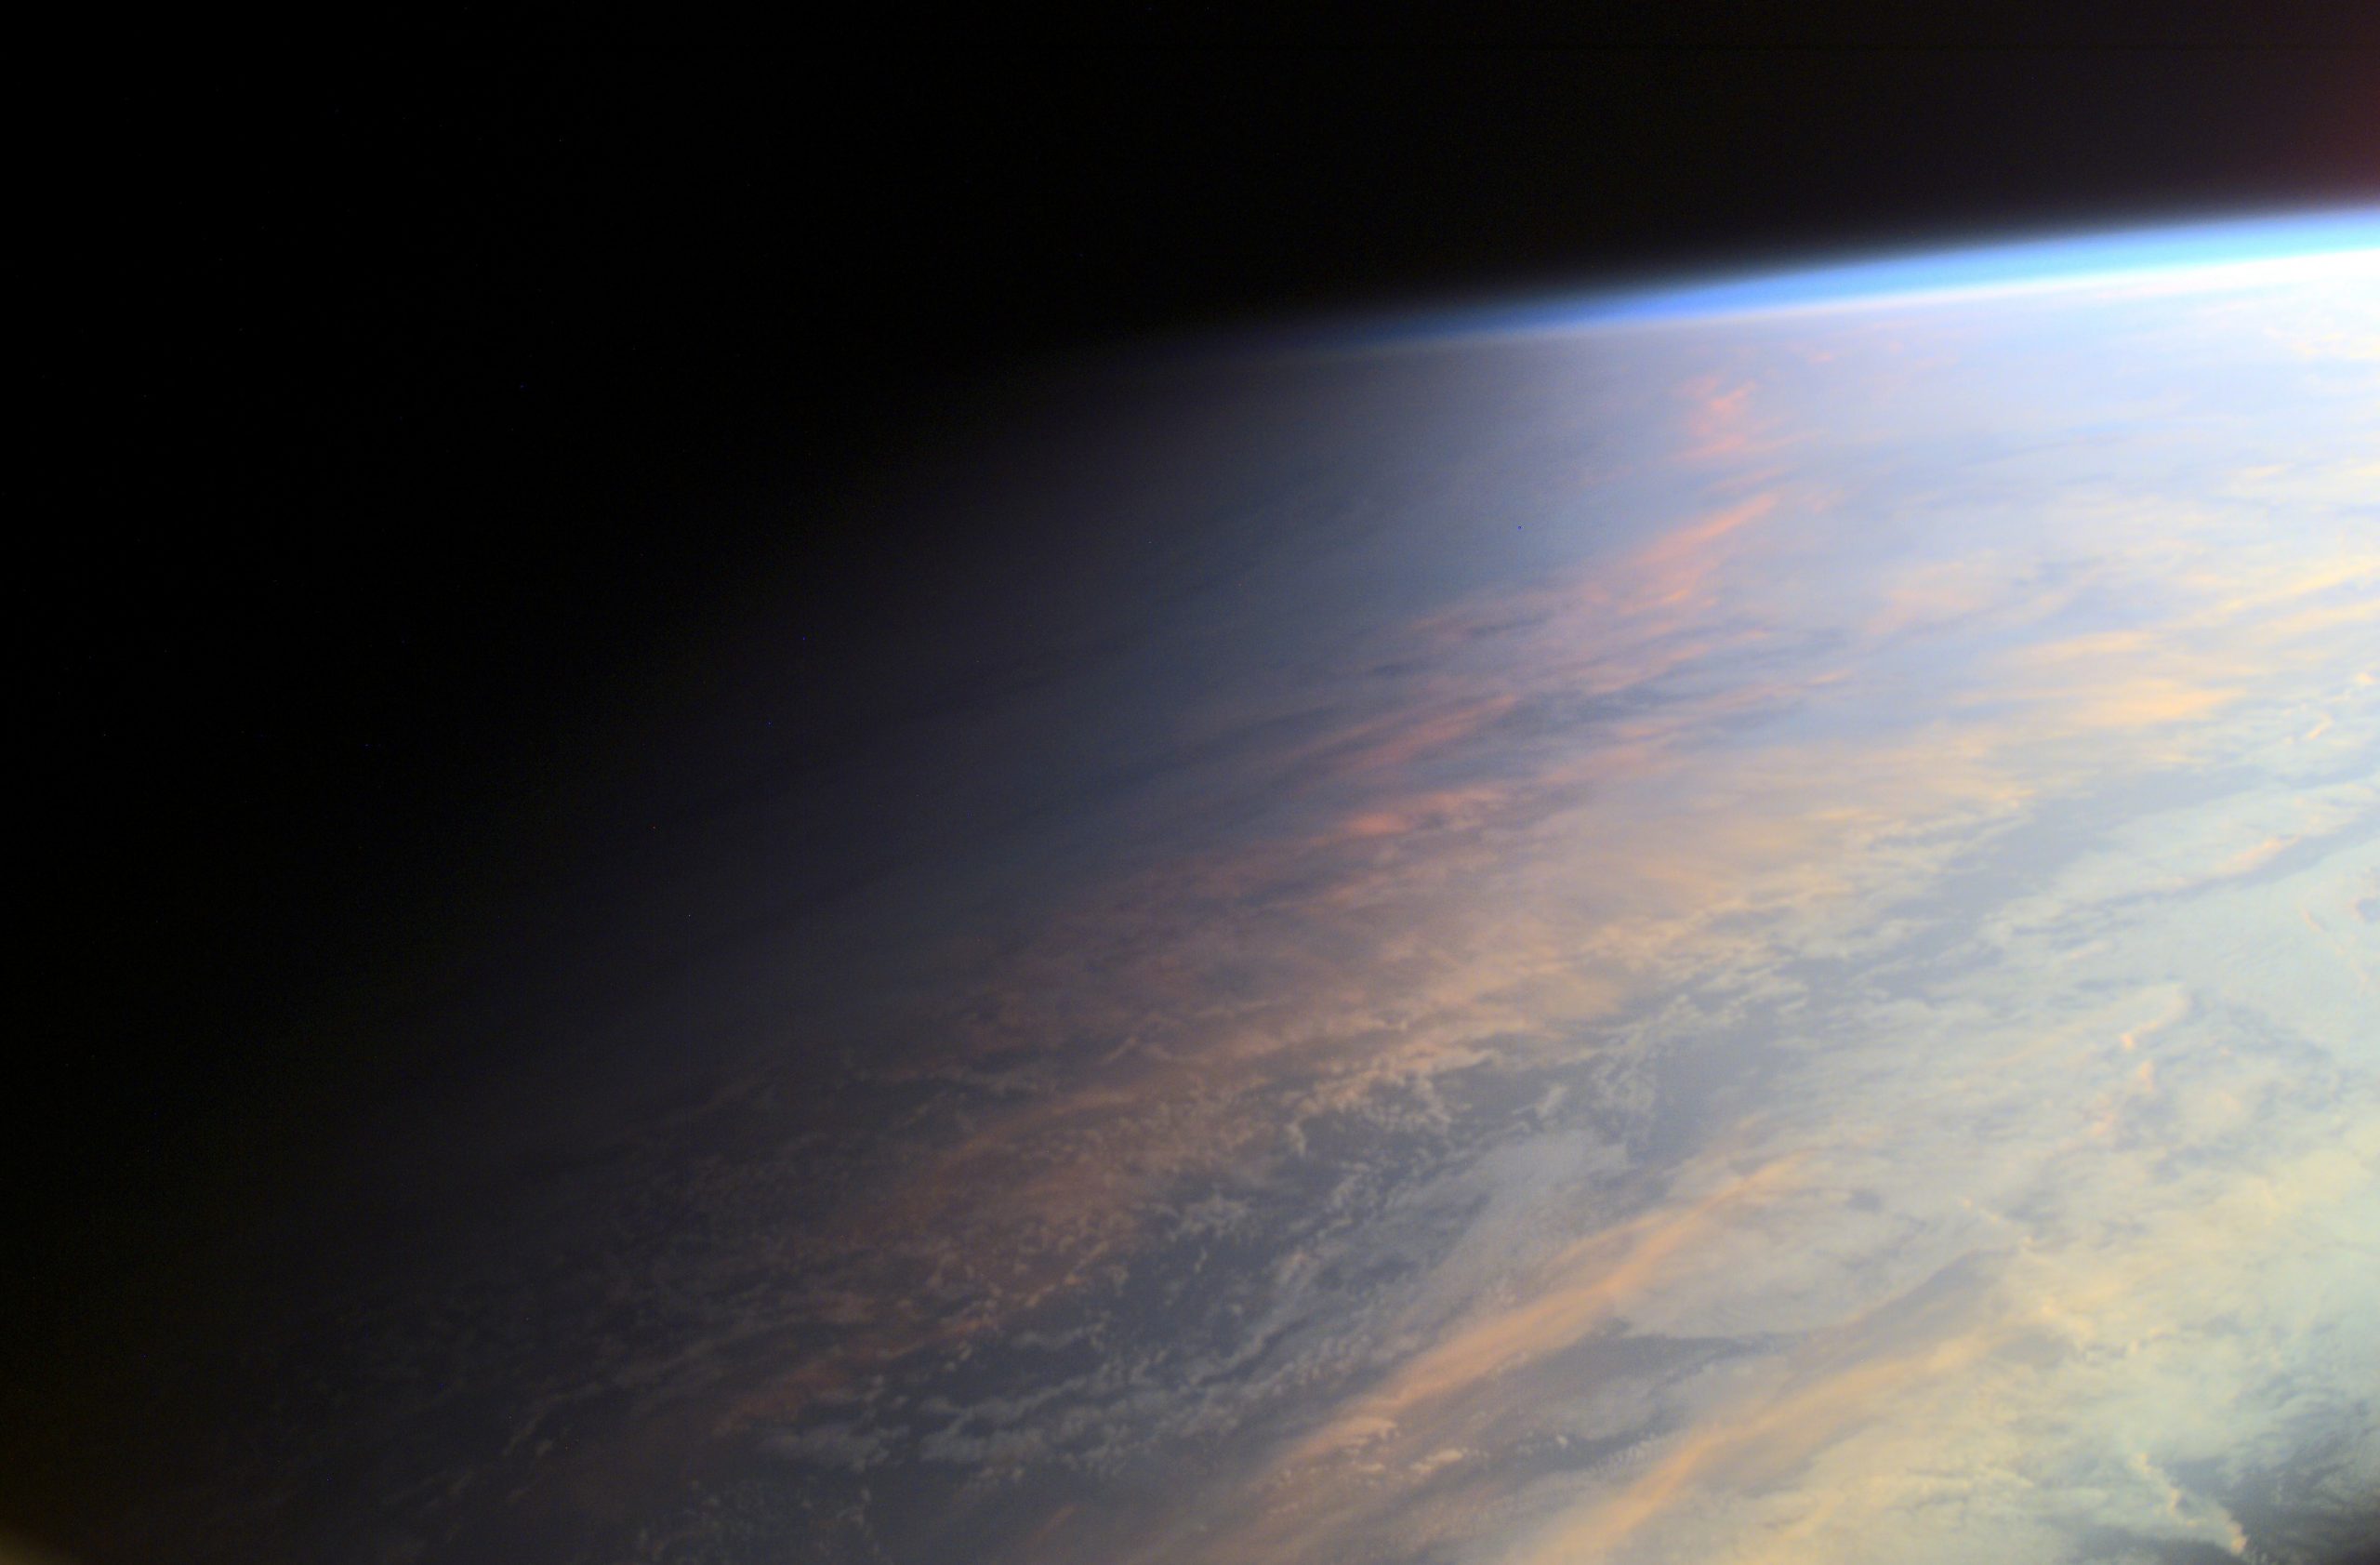 210422 Planet Earth at Twilight ISS Crew scaled APOD/NASA: Alacakaranlıkta Dünya Gezegeni